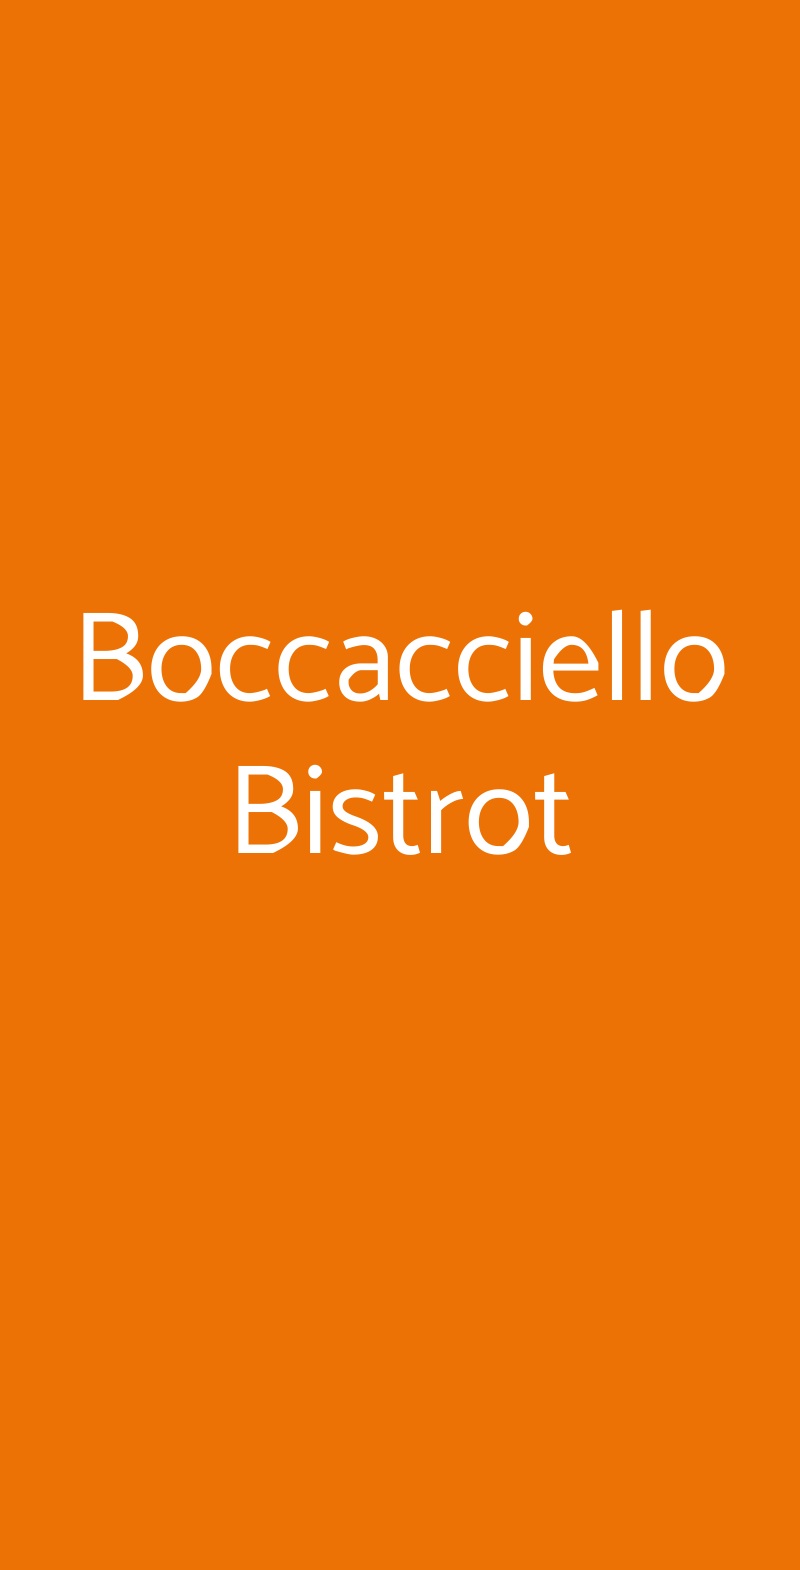 Boccacciello Bistrot Roma menù 1 pagina